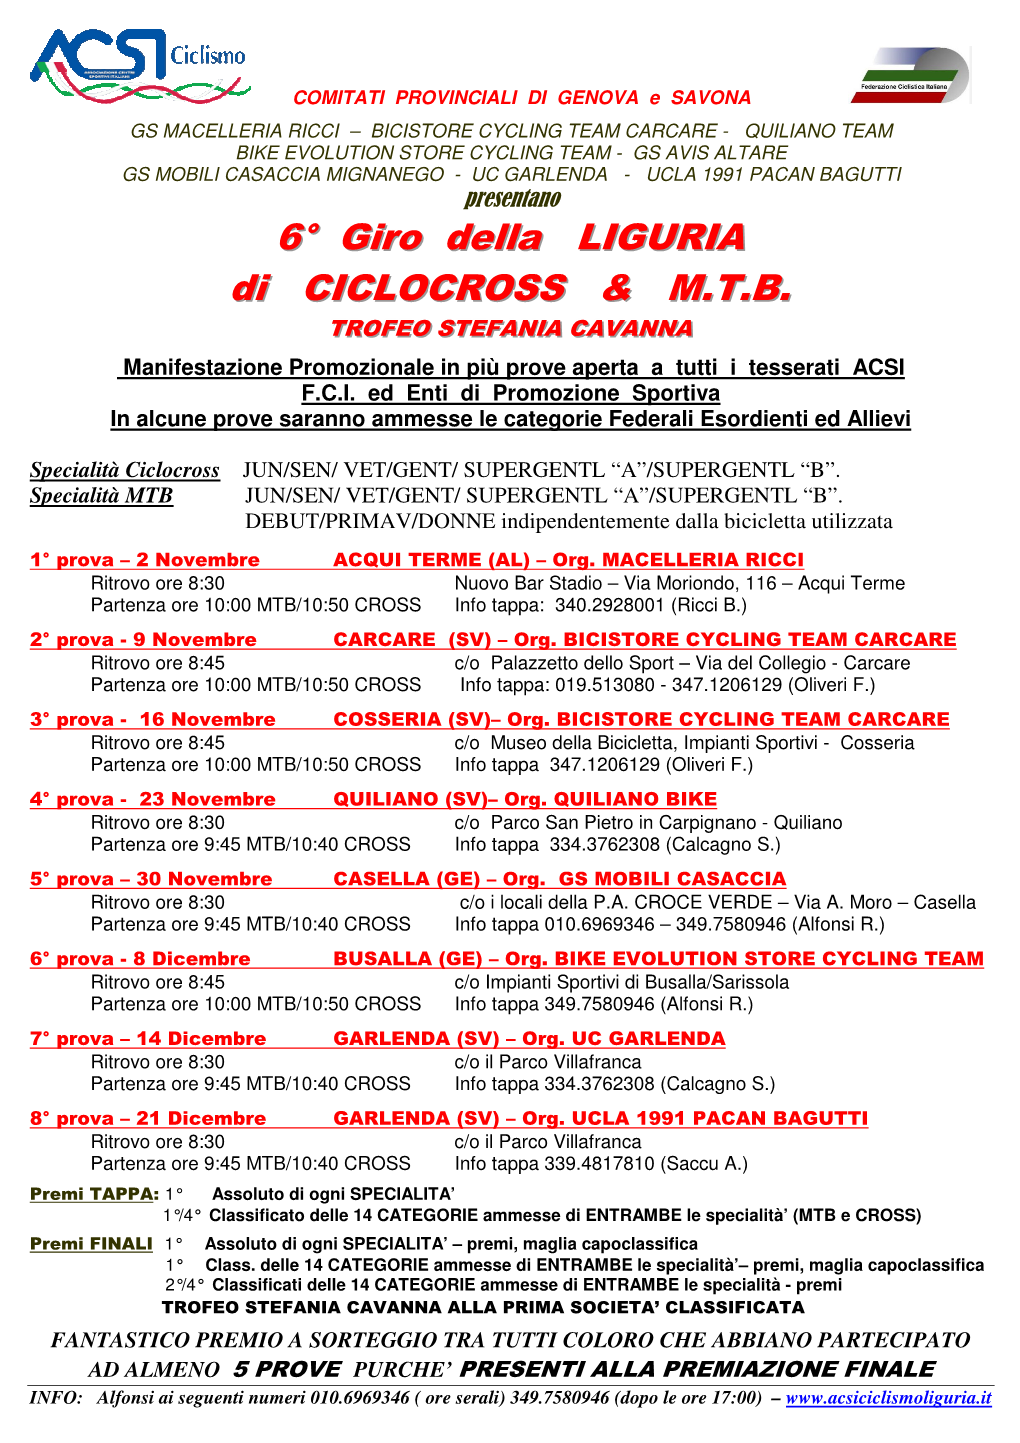 6° Giro Della LIGURIA Di CICLOCROSS & M.T.B